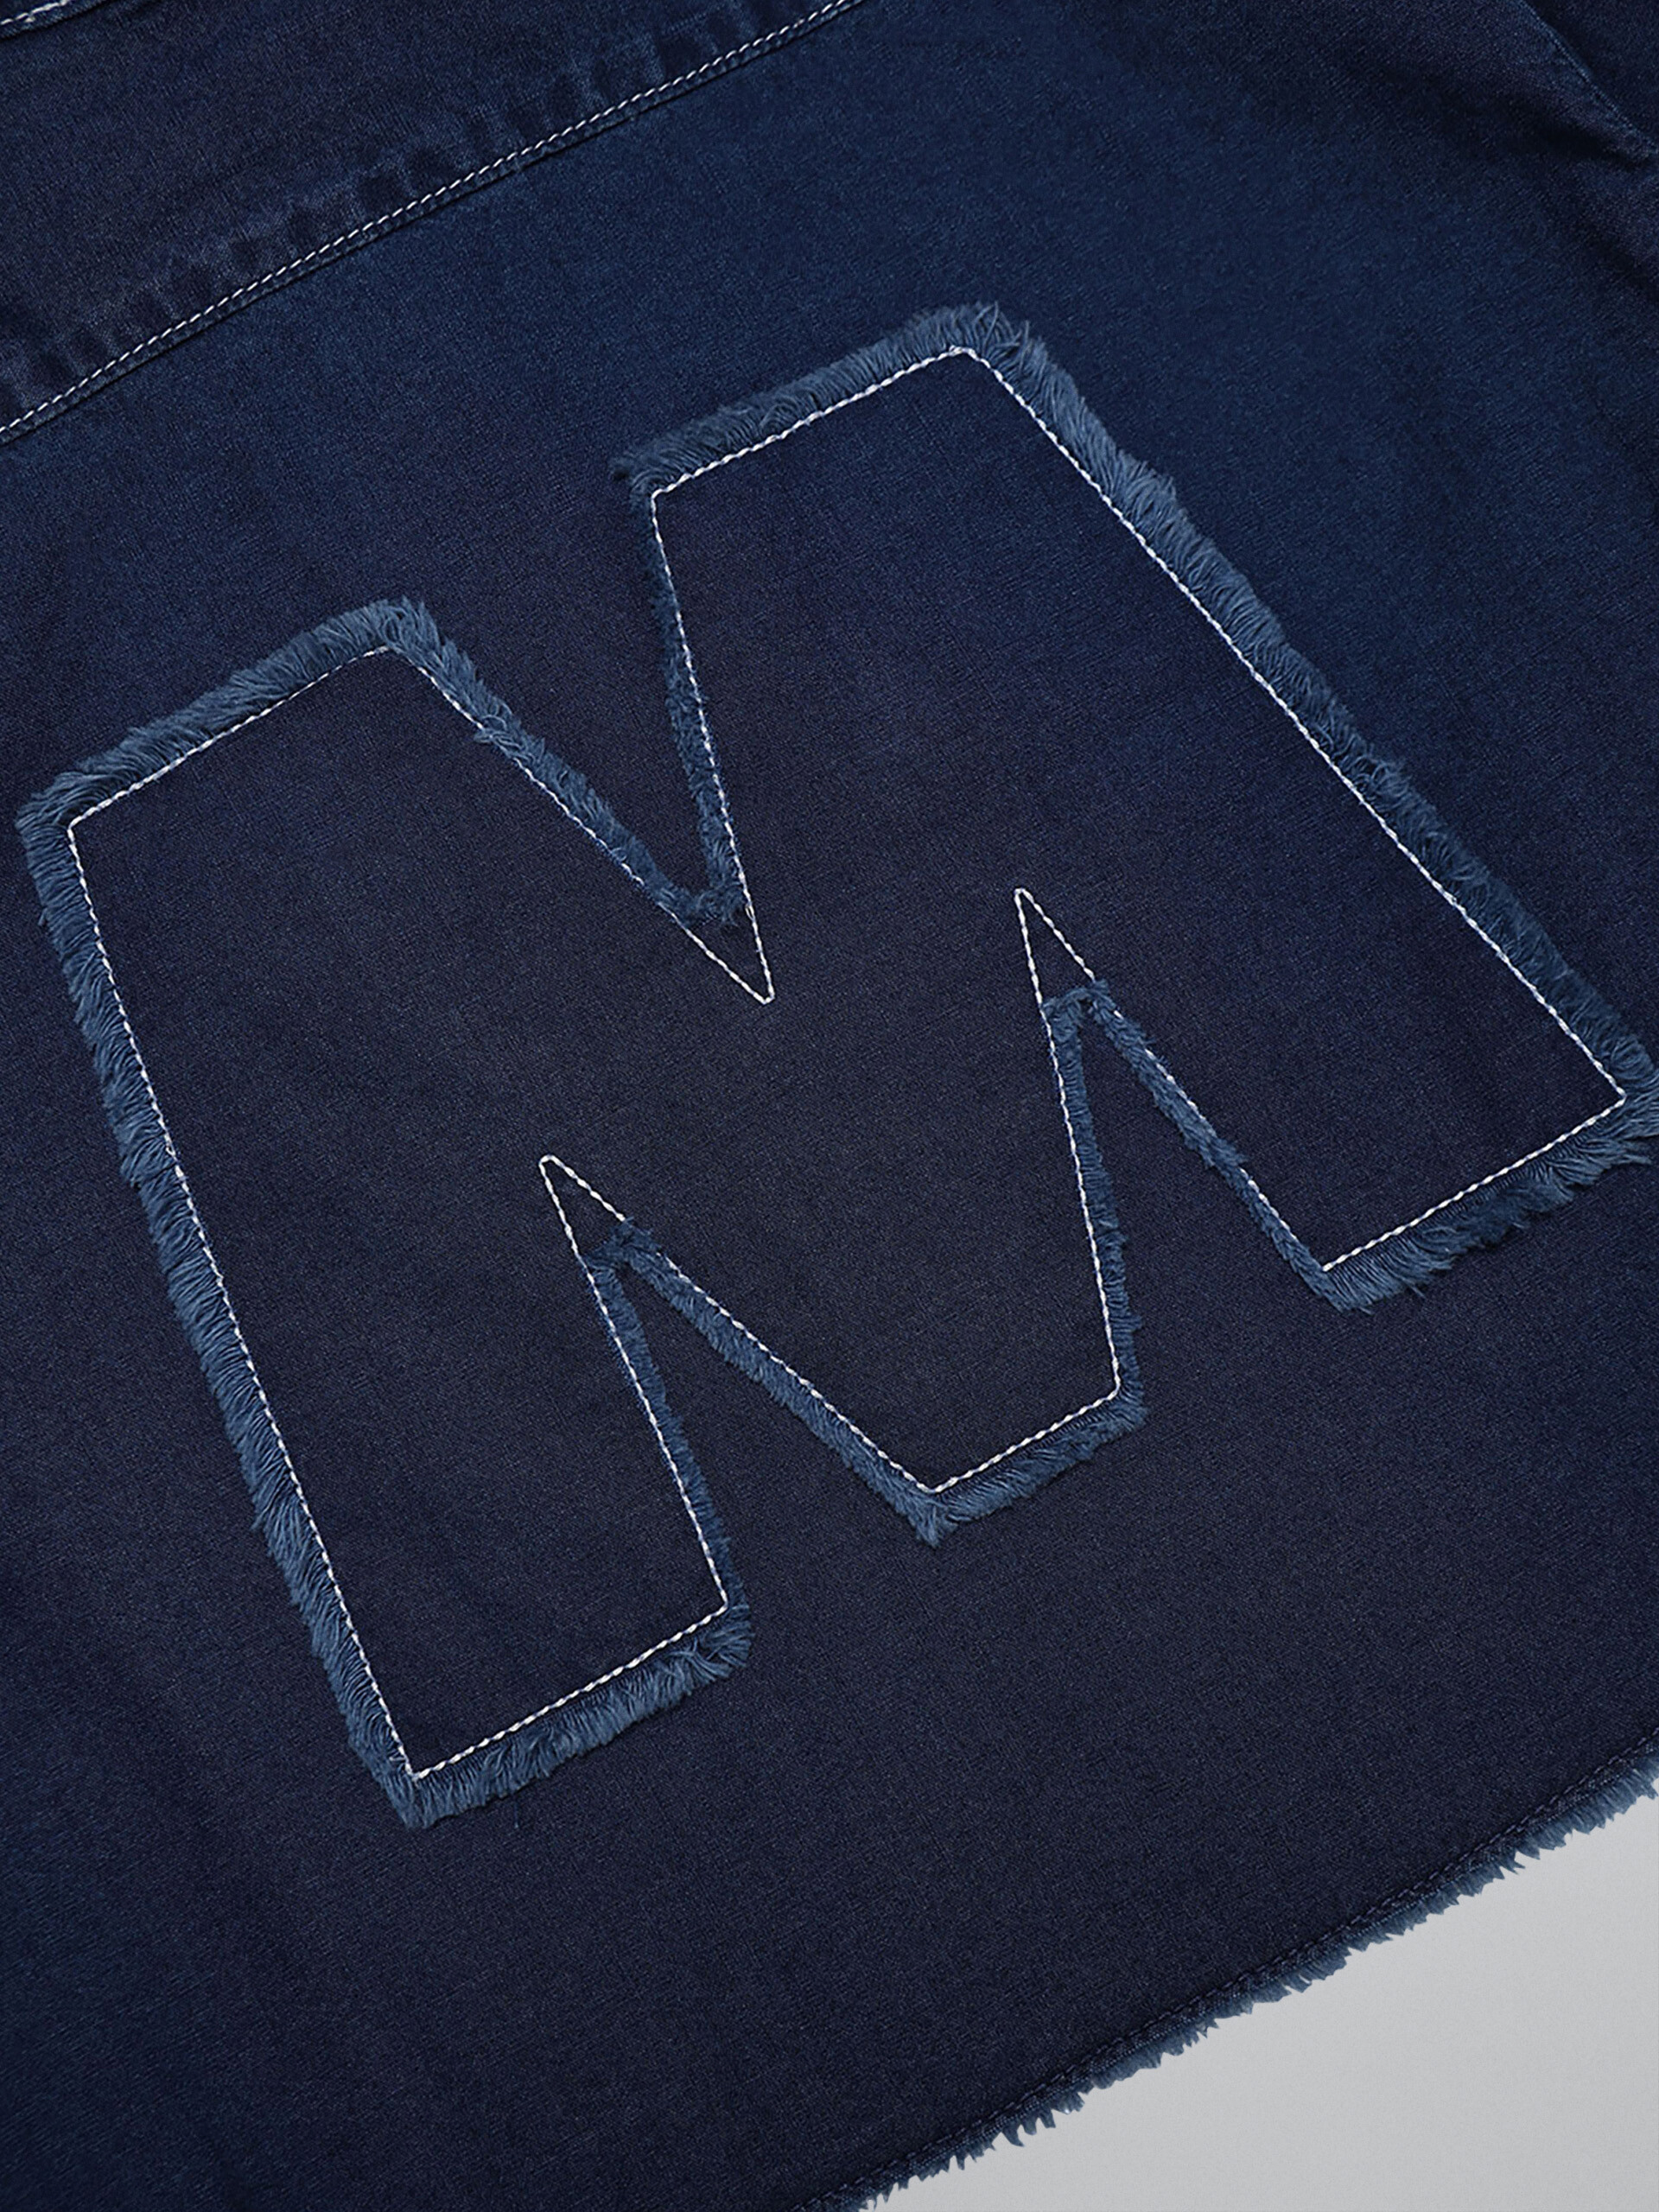 Camisa de denim "M" - Camisas - Image 3